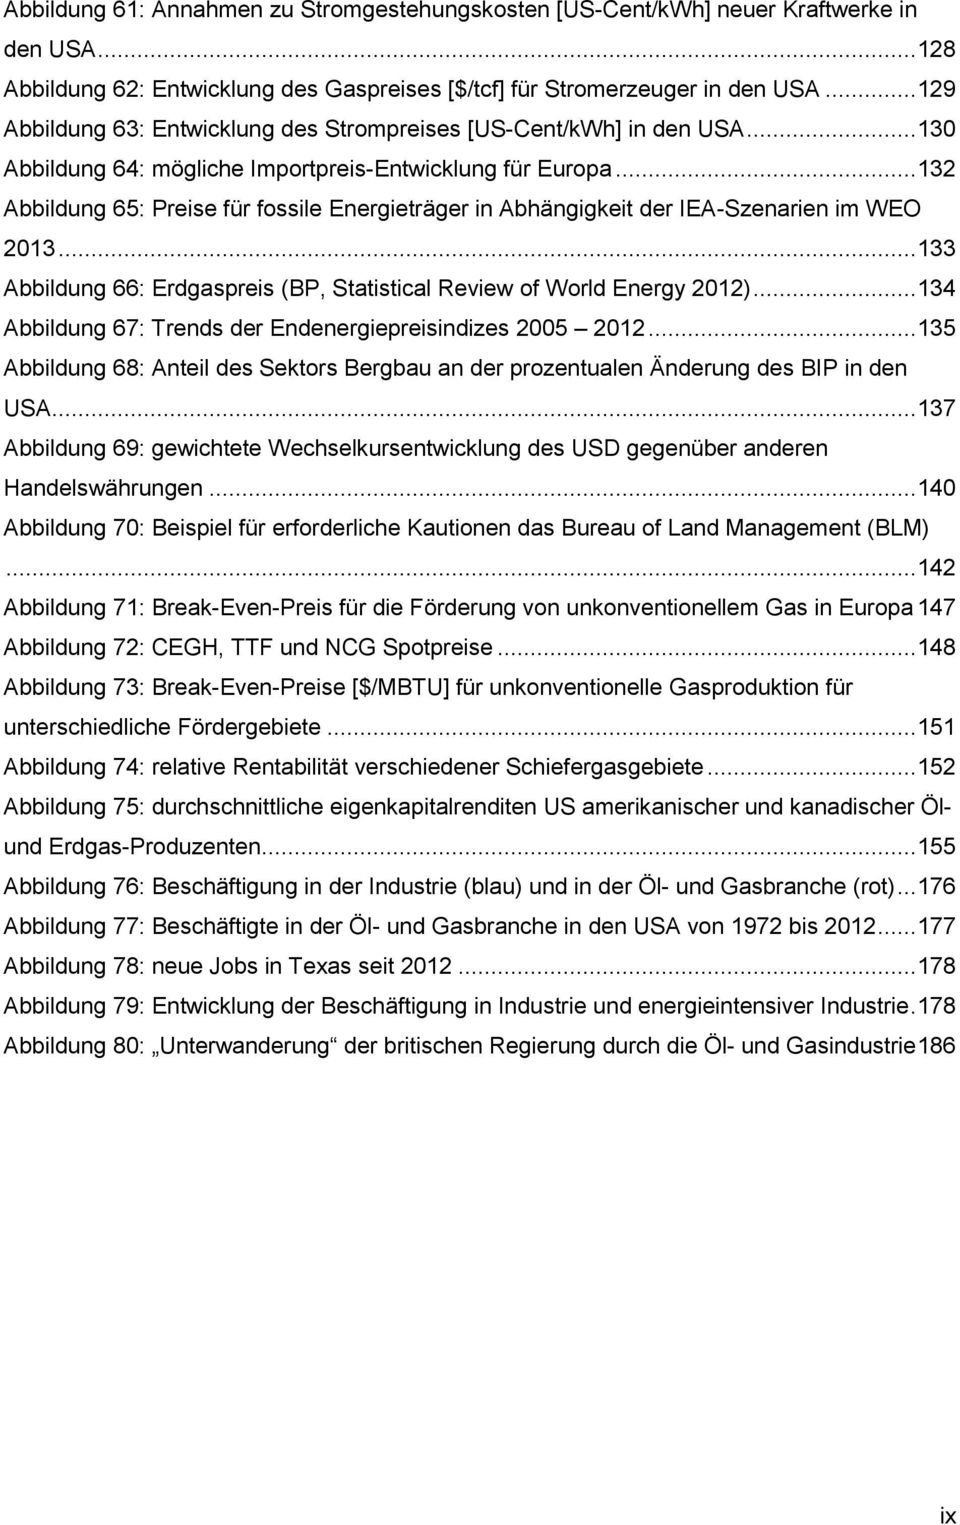 .. 132 Abbildung 65: Preise für fossile Energieträger in Abhängigkeit der IEA-Szenarien im WEO 2013... 133 Abbildung 66: Erdgaspreis (BP, Statistical Review of World Energy 2012).